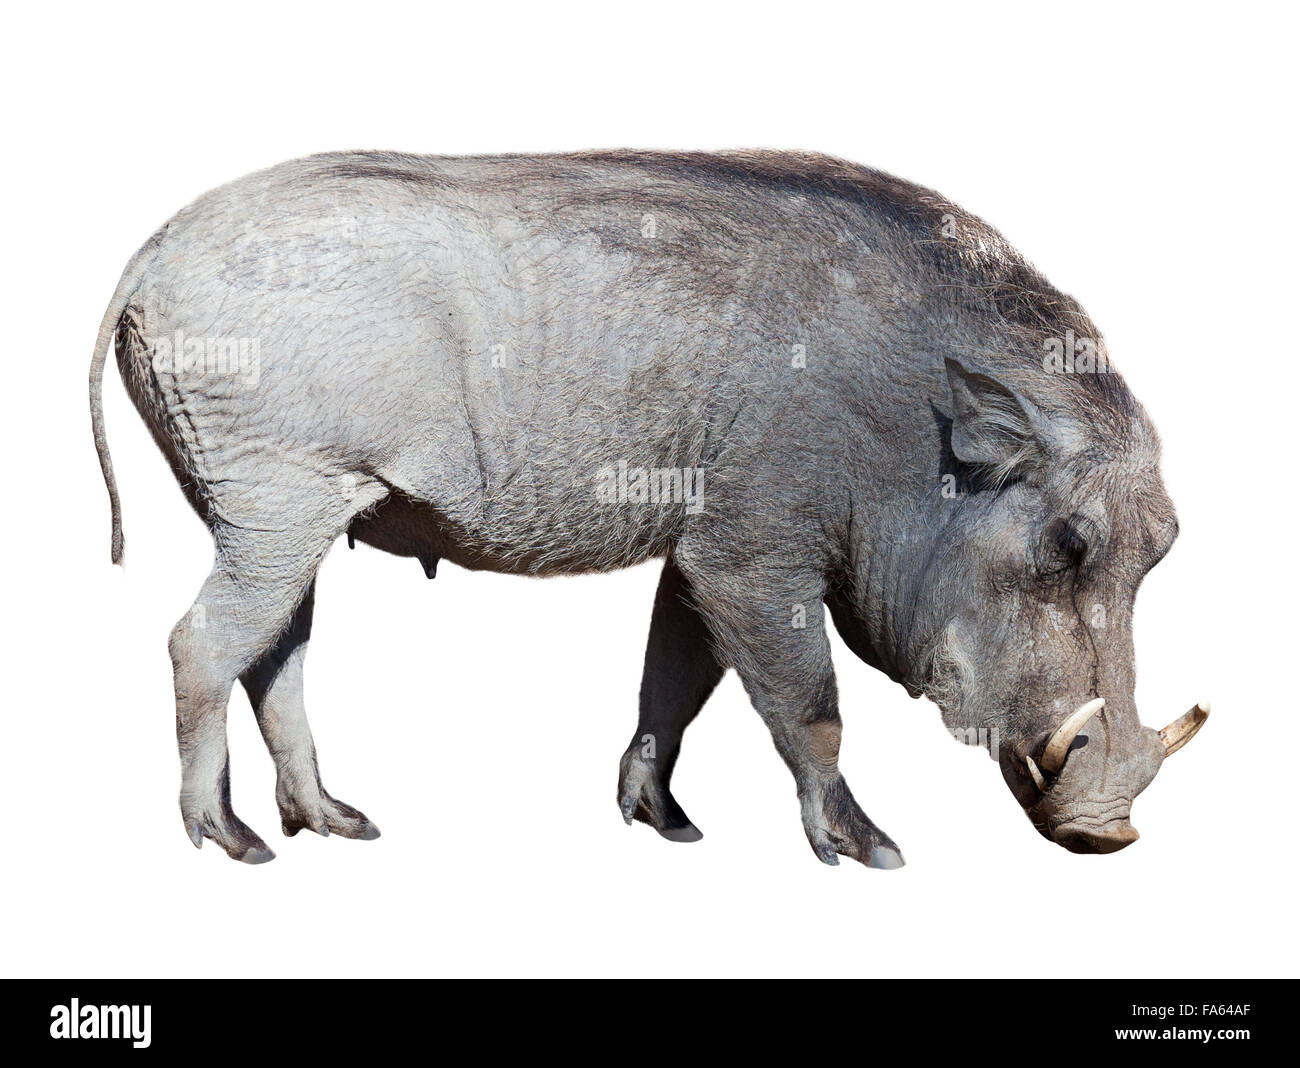 Warthog. Isolated on white background Stock Photo